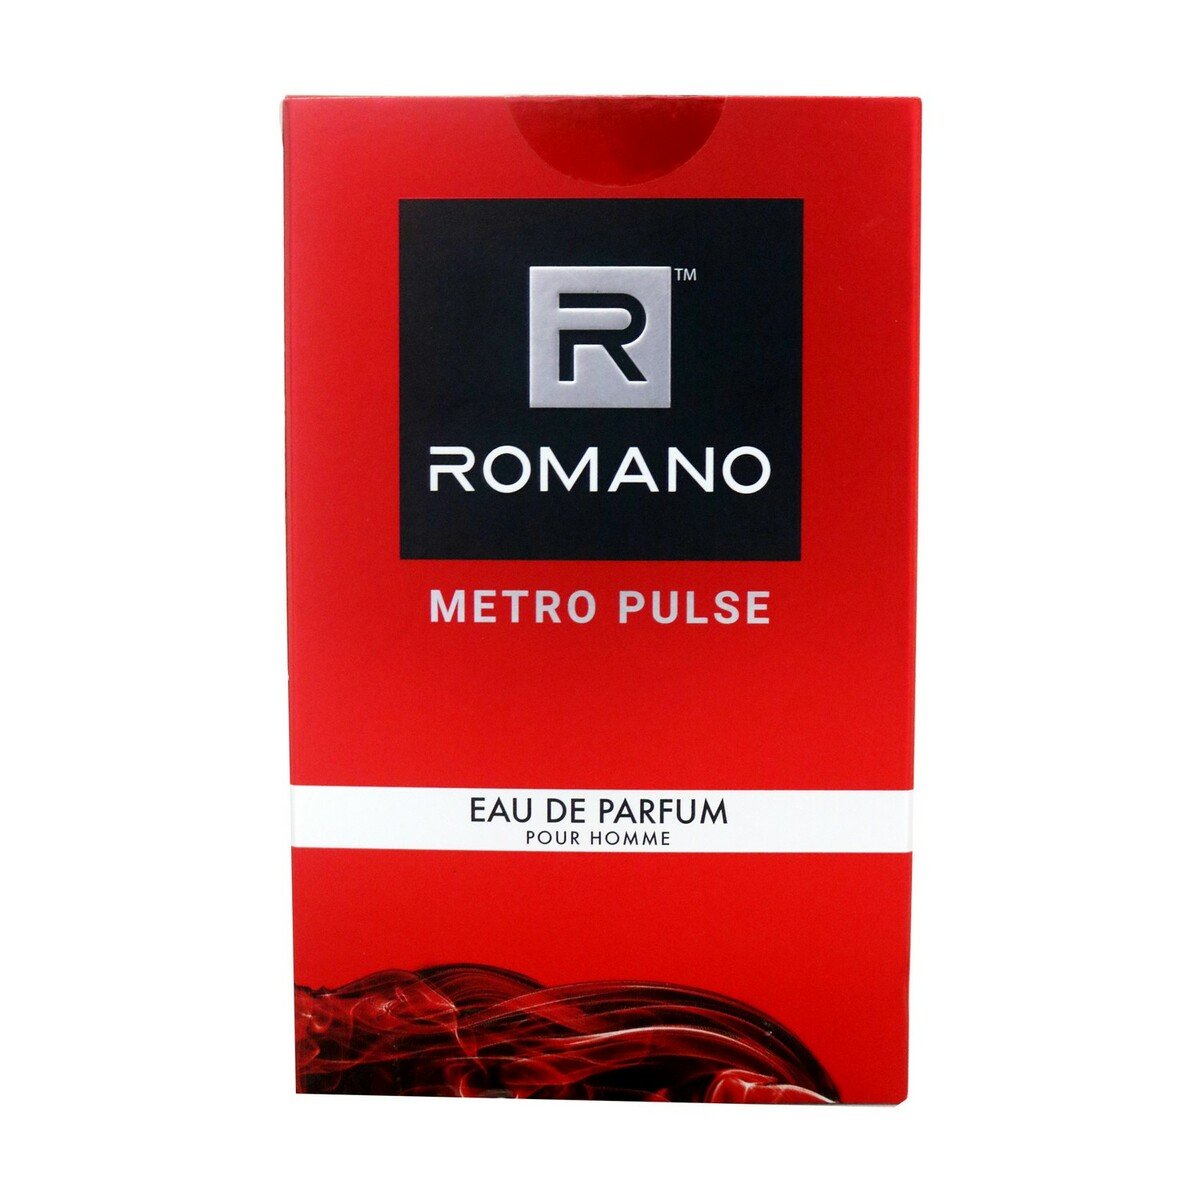 Romano EDT Metro Pulse 100ml